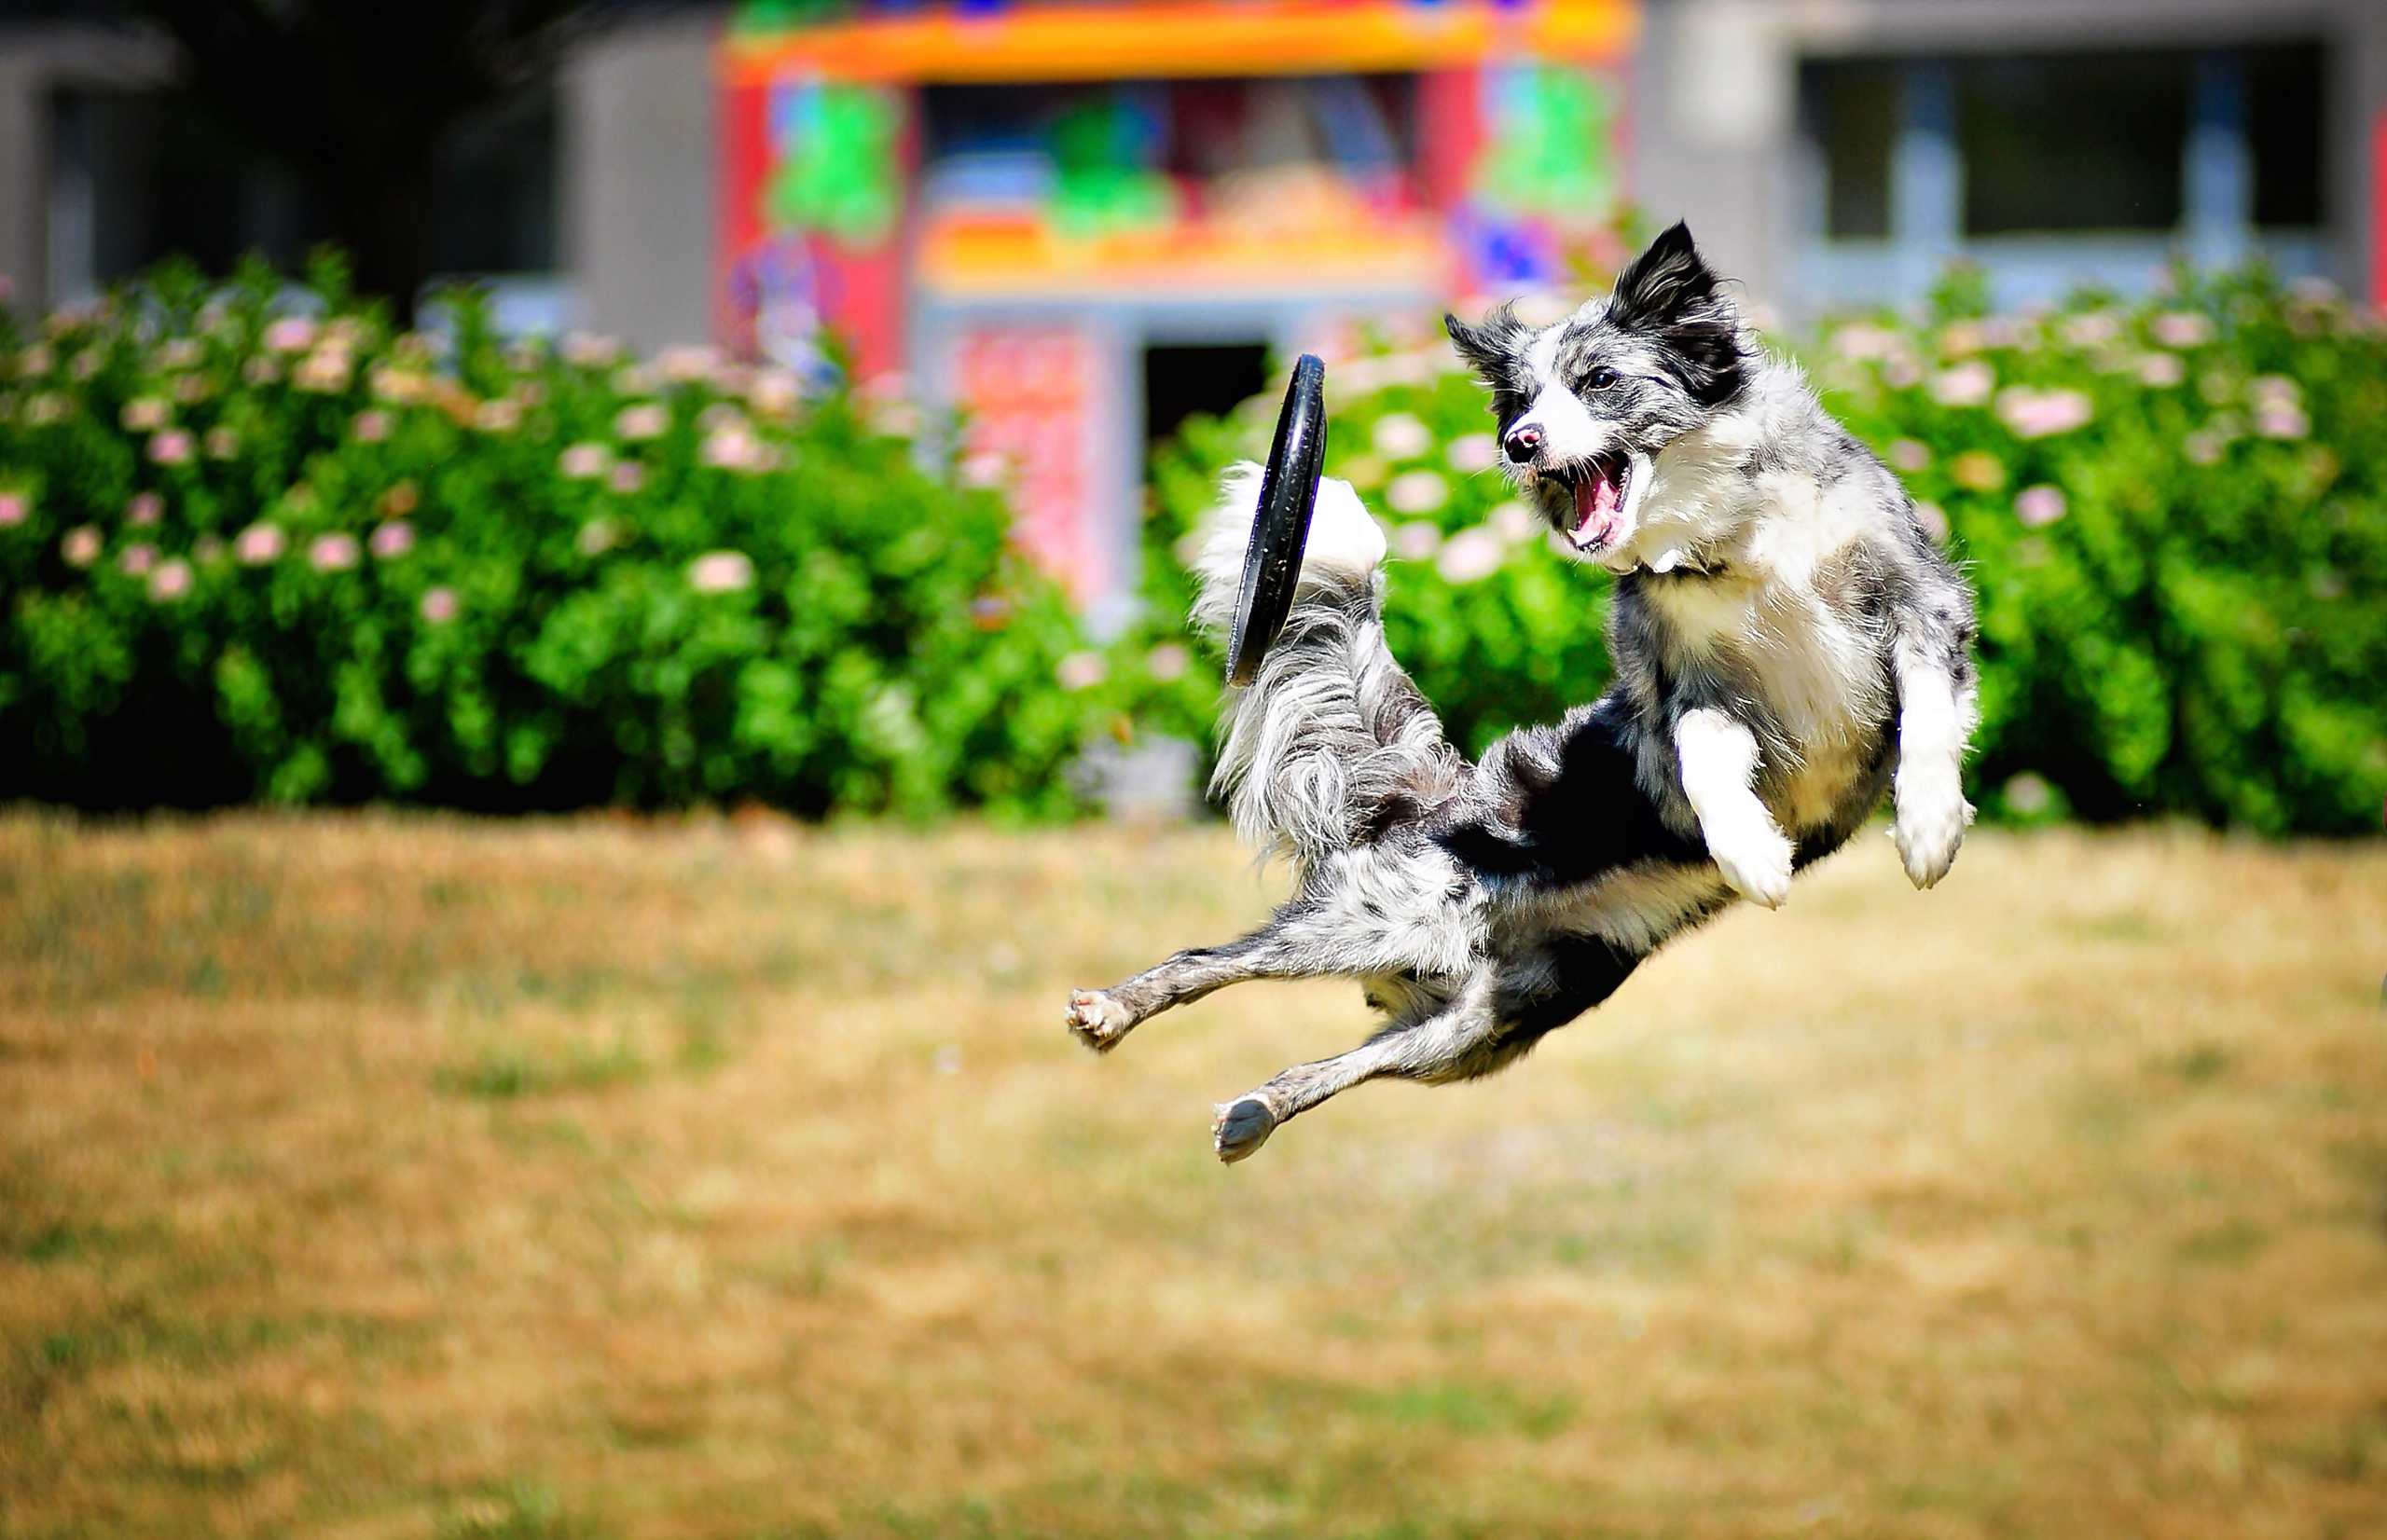 My dog can jump. Бордер колли фрисби. Малинуа и бордер колли. Собака в прыжке. Радостные животные.